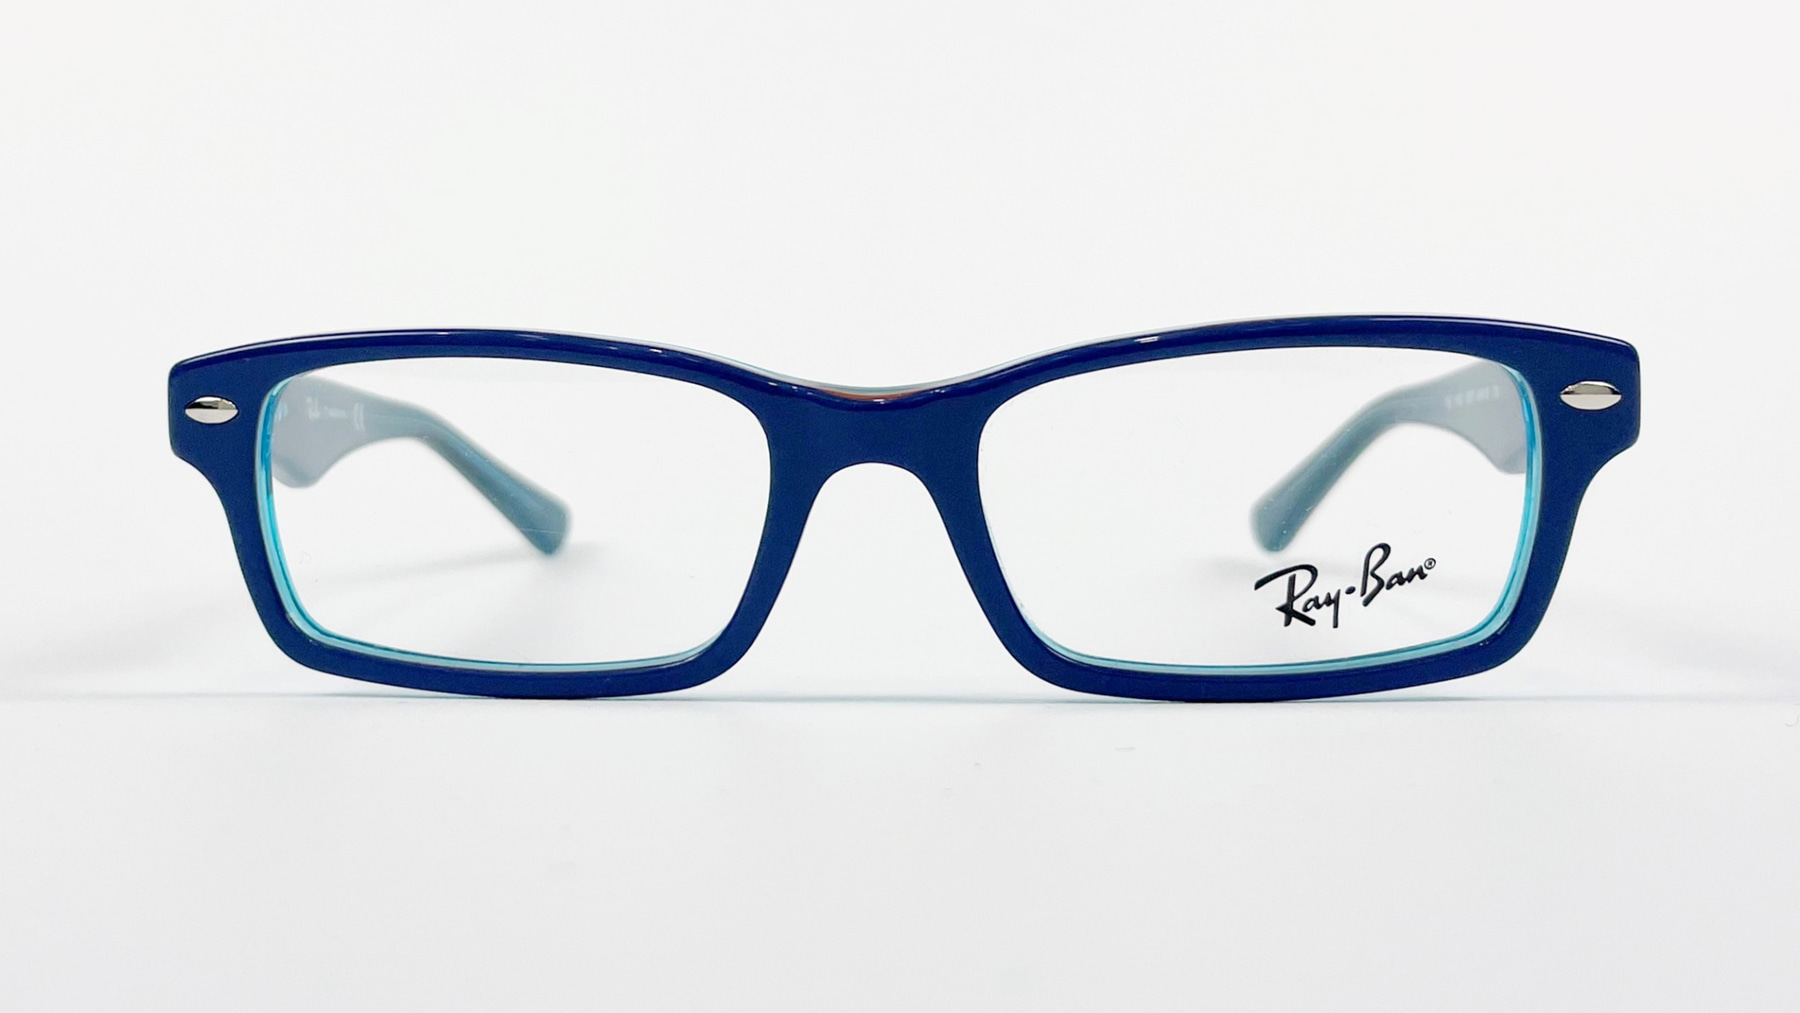 RayBan RB1530 3587, Korean glasses, sunglasses, eyeglasses, glasses